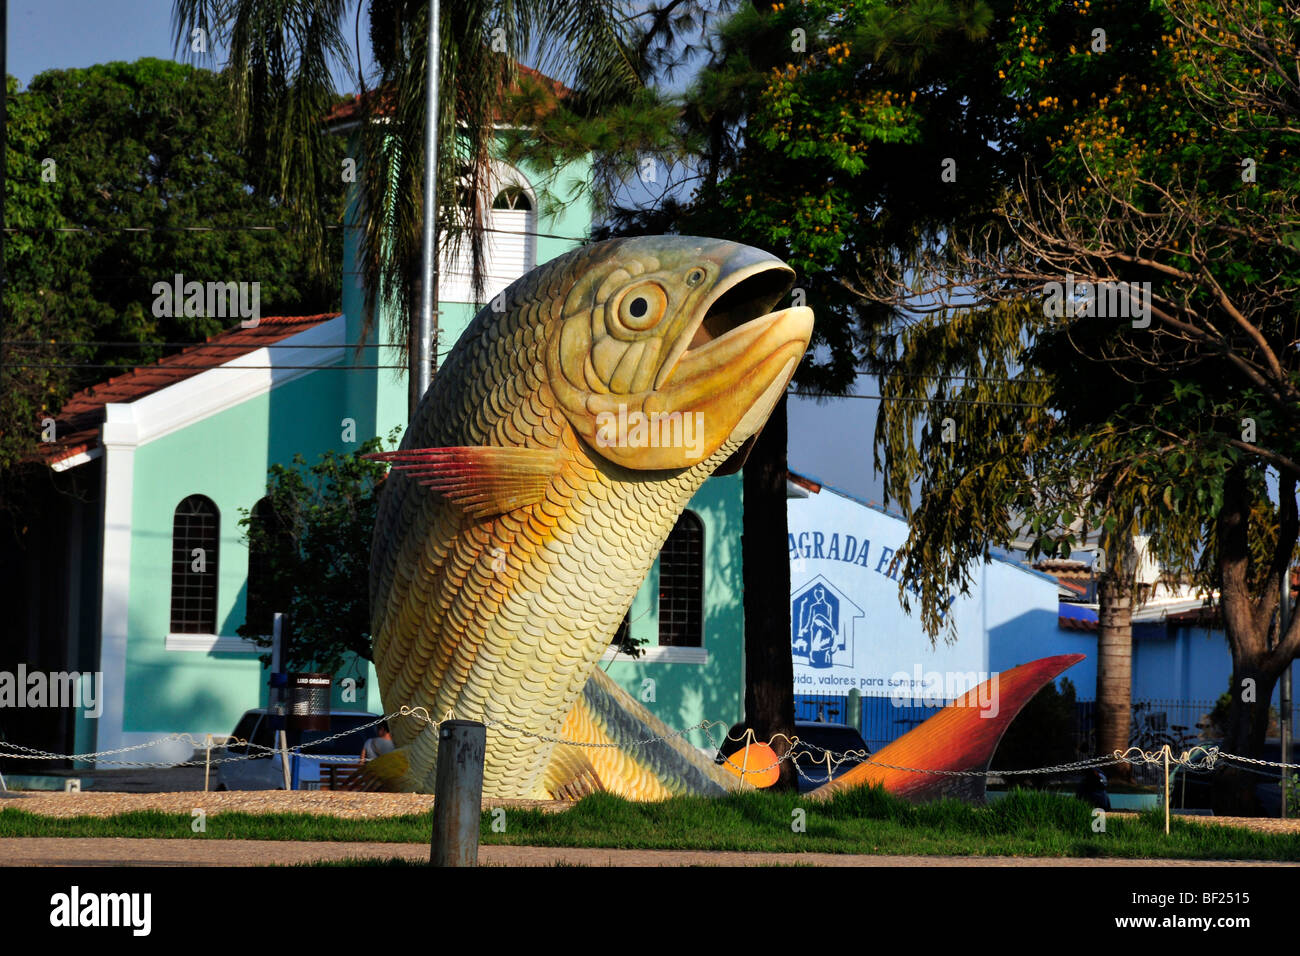 Piraputanga statua che si trova nella parte anteriore della chiesa, Bonito, Mato Grosso do Sul in Brasile Foto Stock